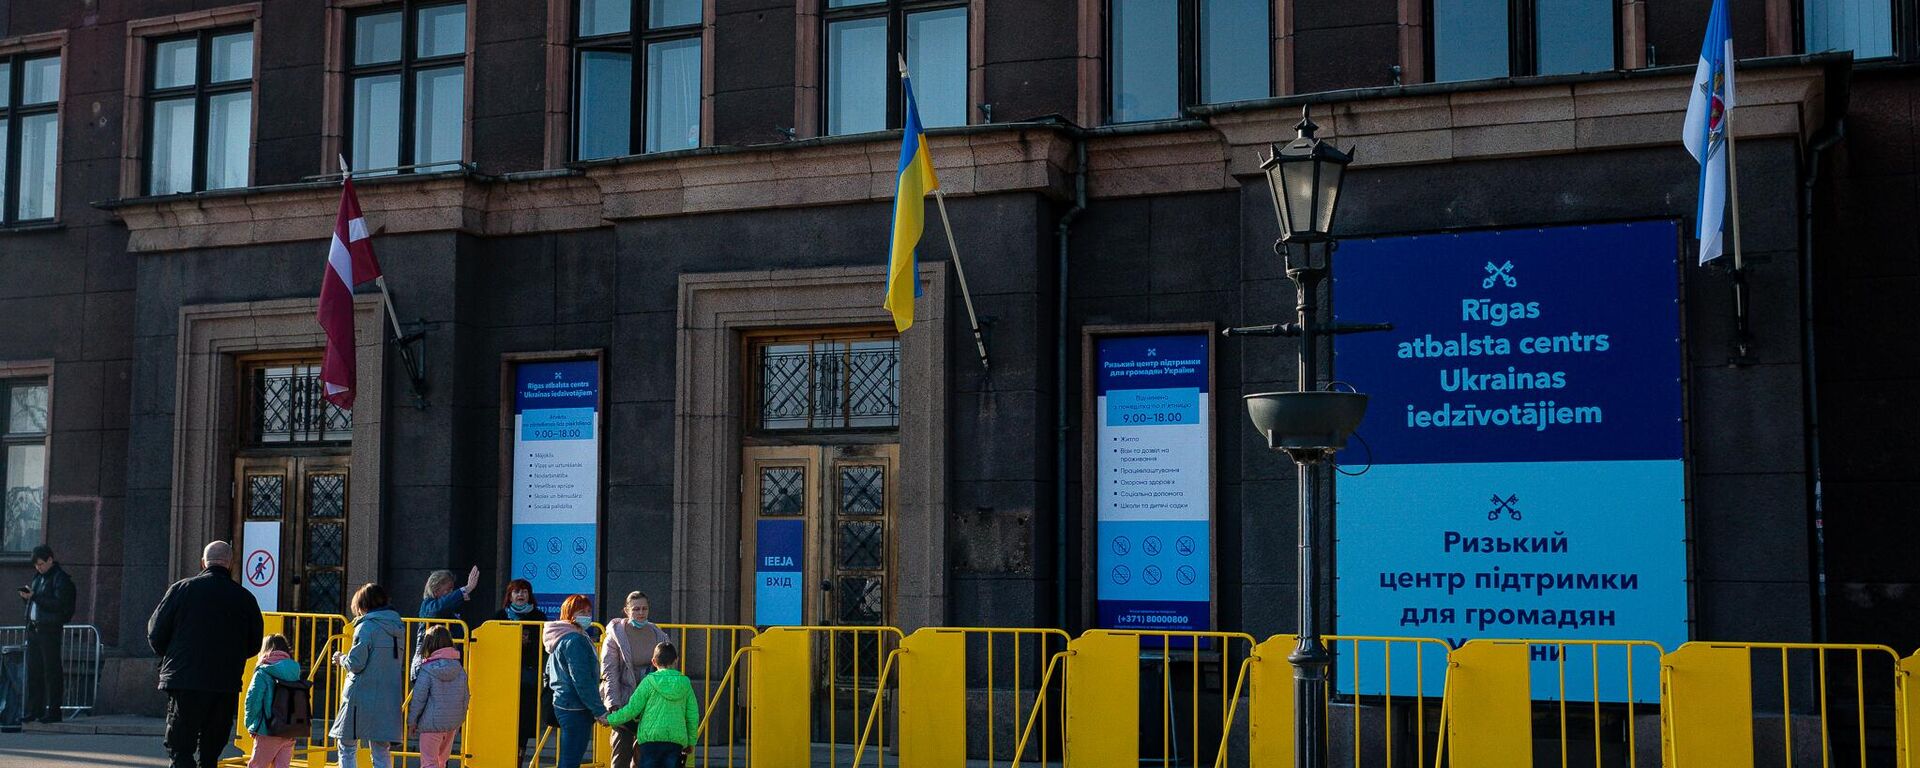 Рижский центр поддержки граждан Украины в бывшем здании Рижского университета - Sputnik Latvija, 1920, 06.04.2022